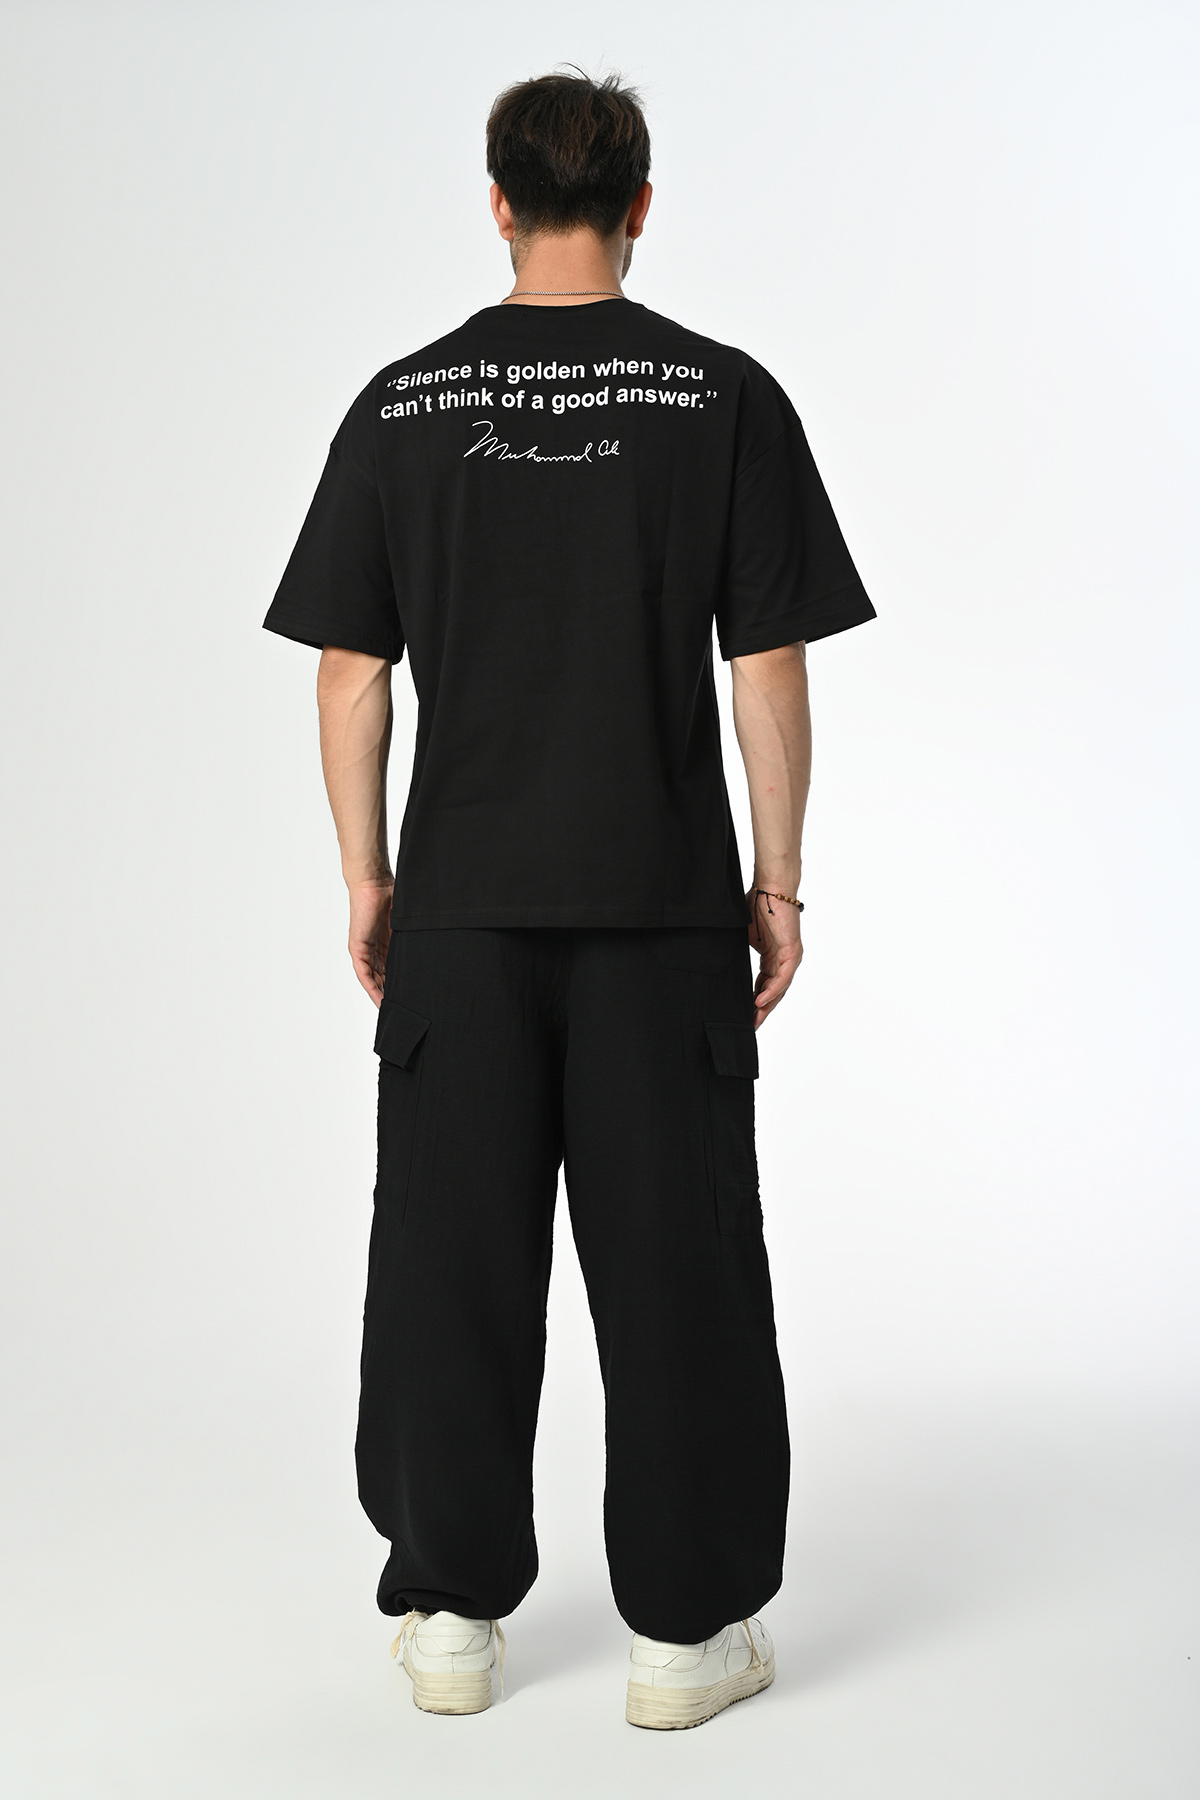 M.Ali Tasarım Siyah Pamuk Bisiklet Yaka Dembu T-shirt '23